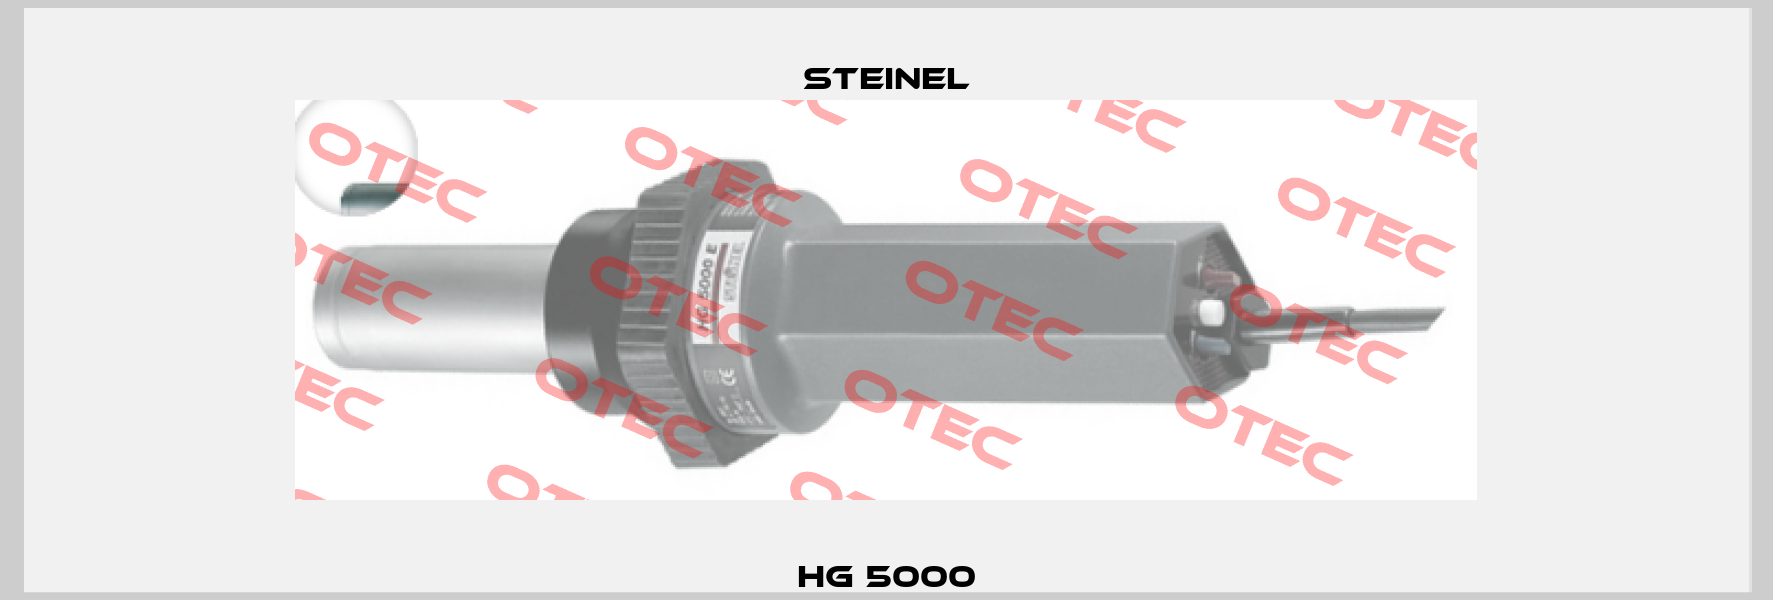 HG 5000 Steinel